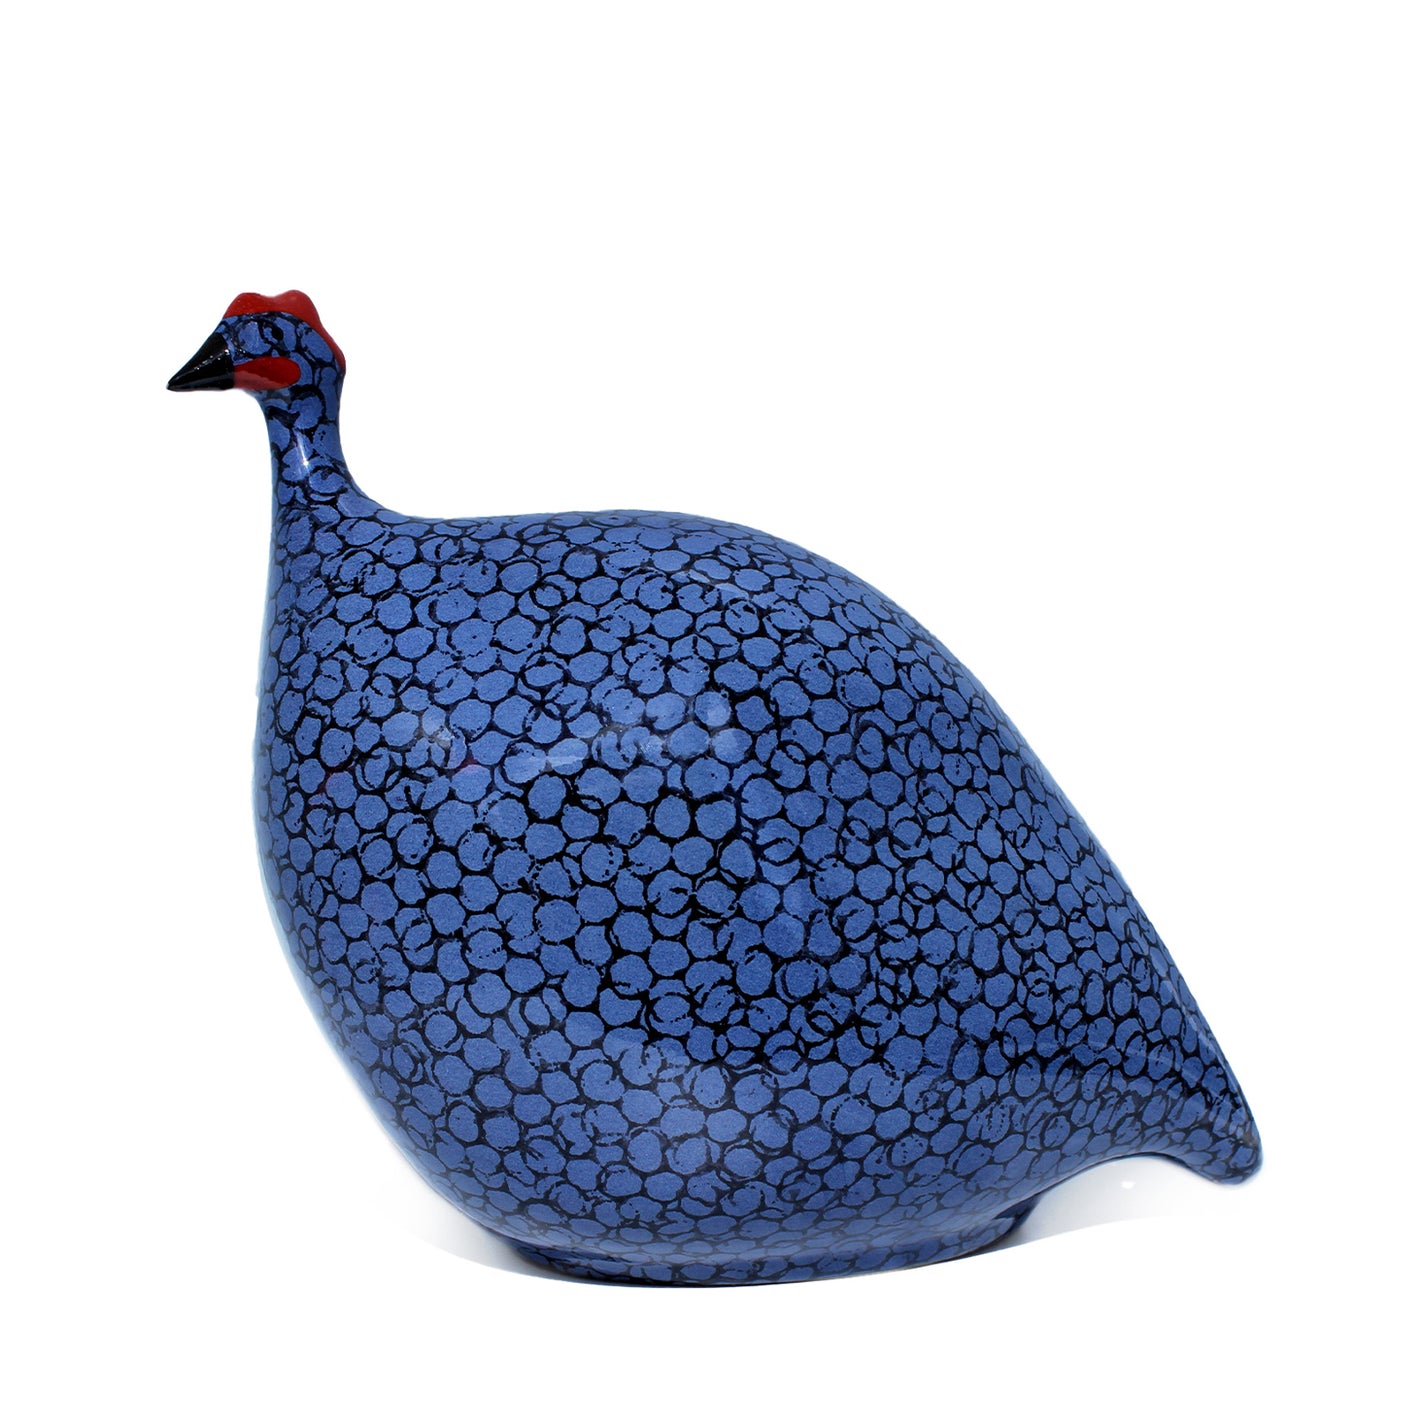 Pintade (Guinea Fowl) Medium - Black/Blue: Official Stockist